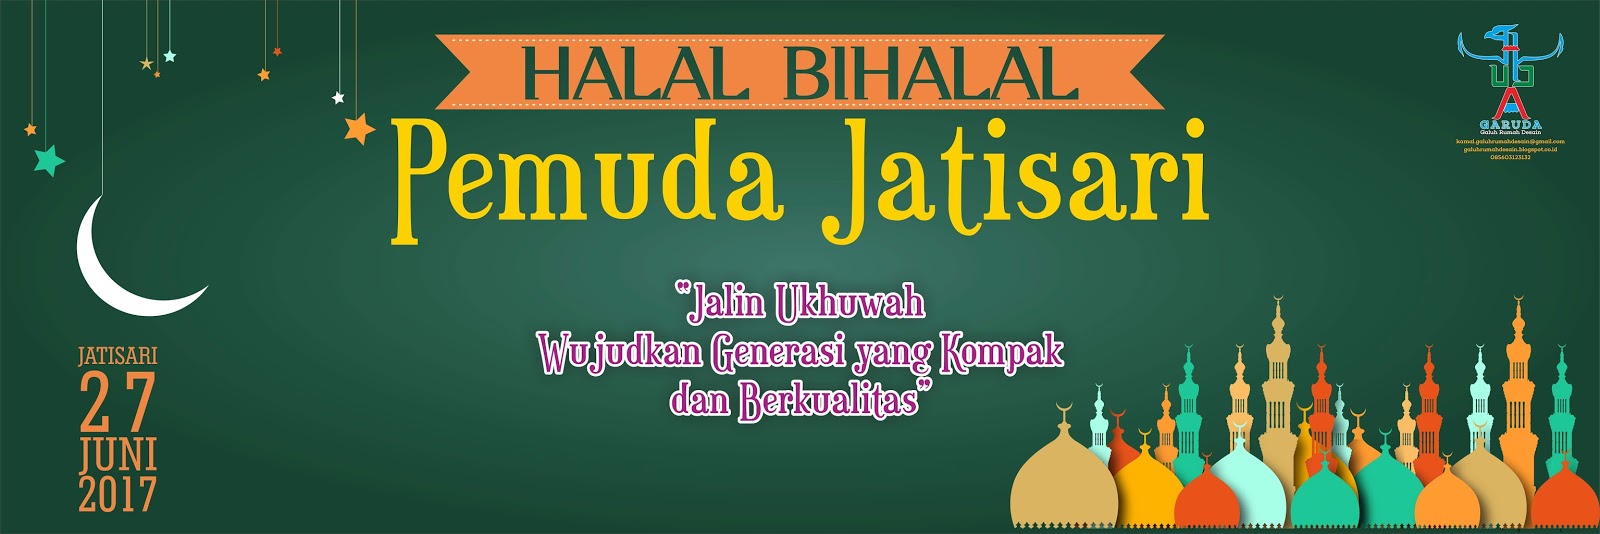  Banner  Halal  Bihalal  Pemuda Jatisari 2021 cdr  Download 